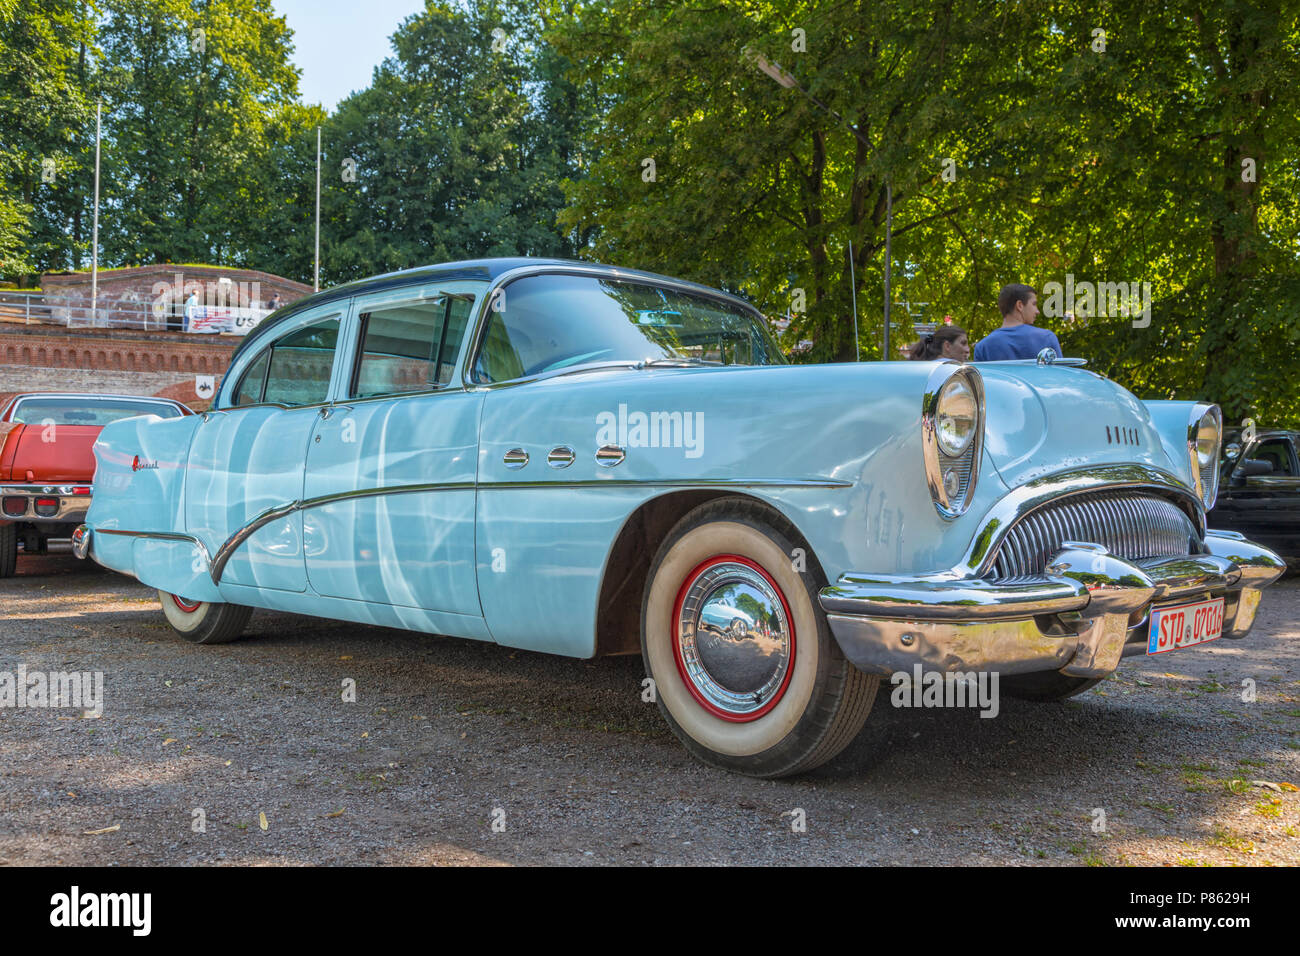 Stade, Germania - Luglio 8, 2018: un'annata 1954 Buick speciale 4 porta al quinto periodo estivo ci guida car meeting. Foto Stock